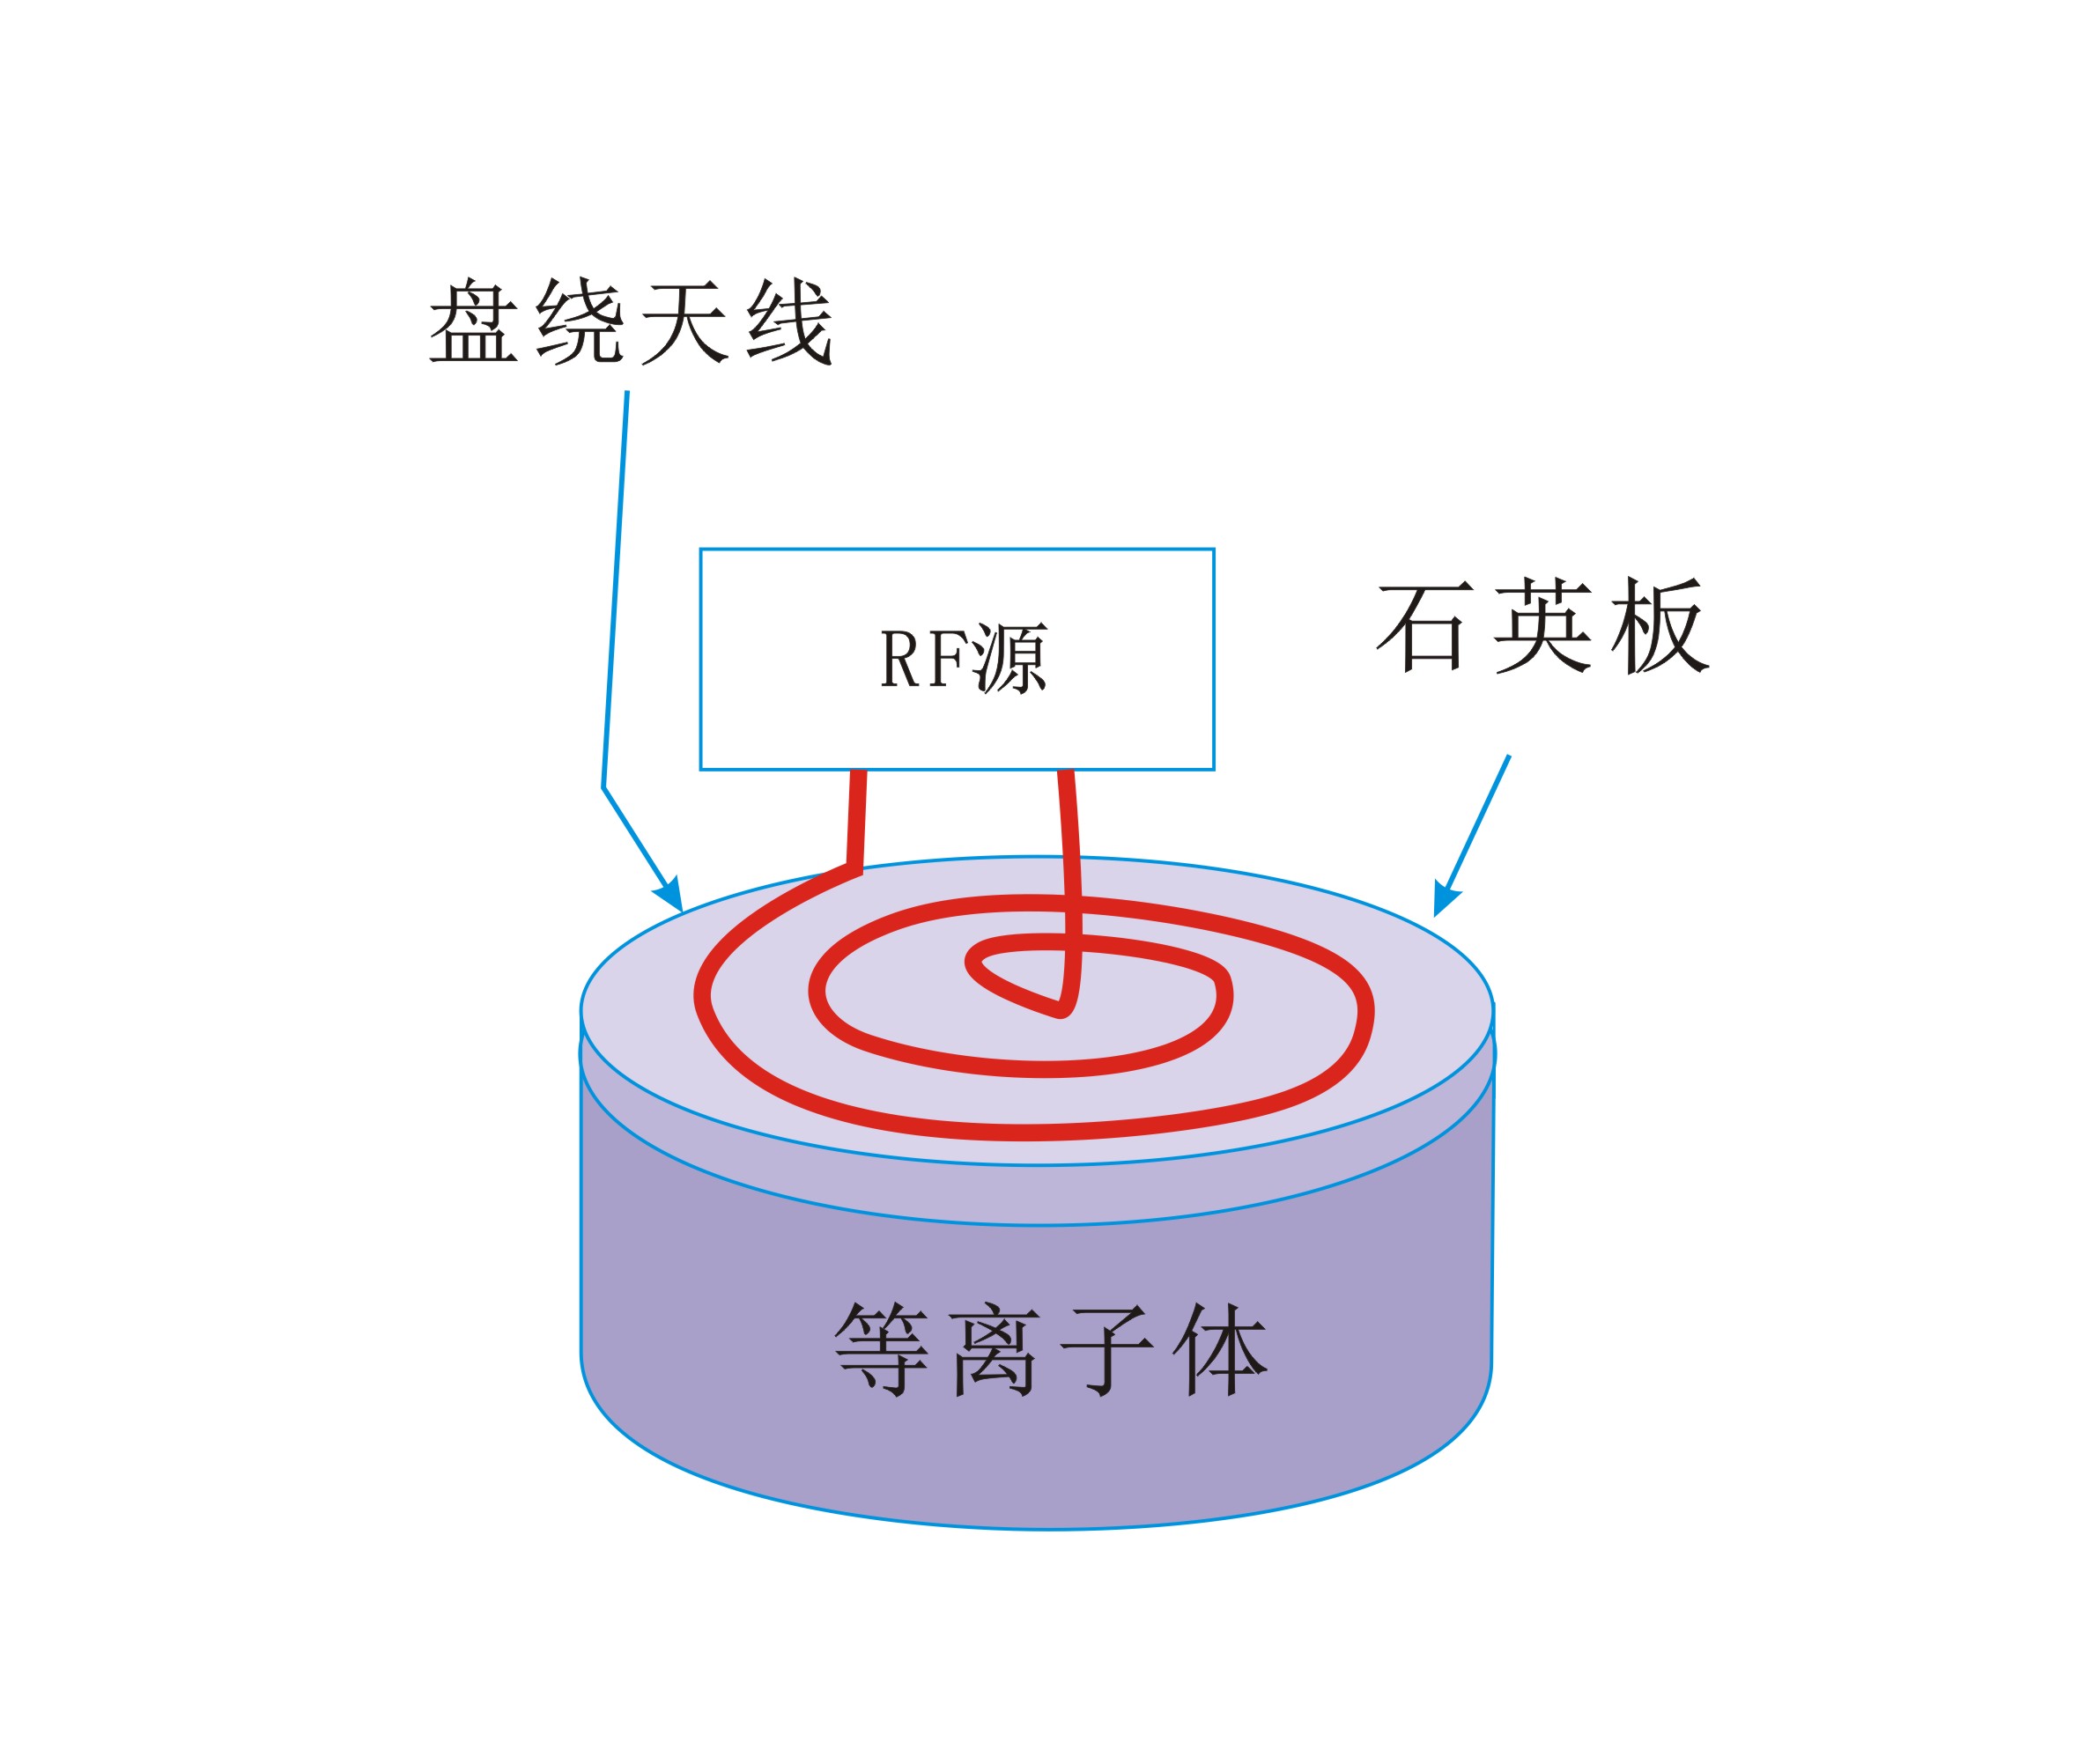 平面盘绕状线圈生成感应耦合等离子体-普乐斯等离子清洗机